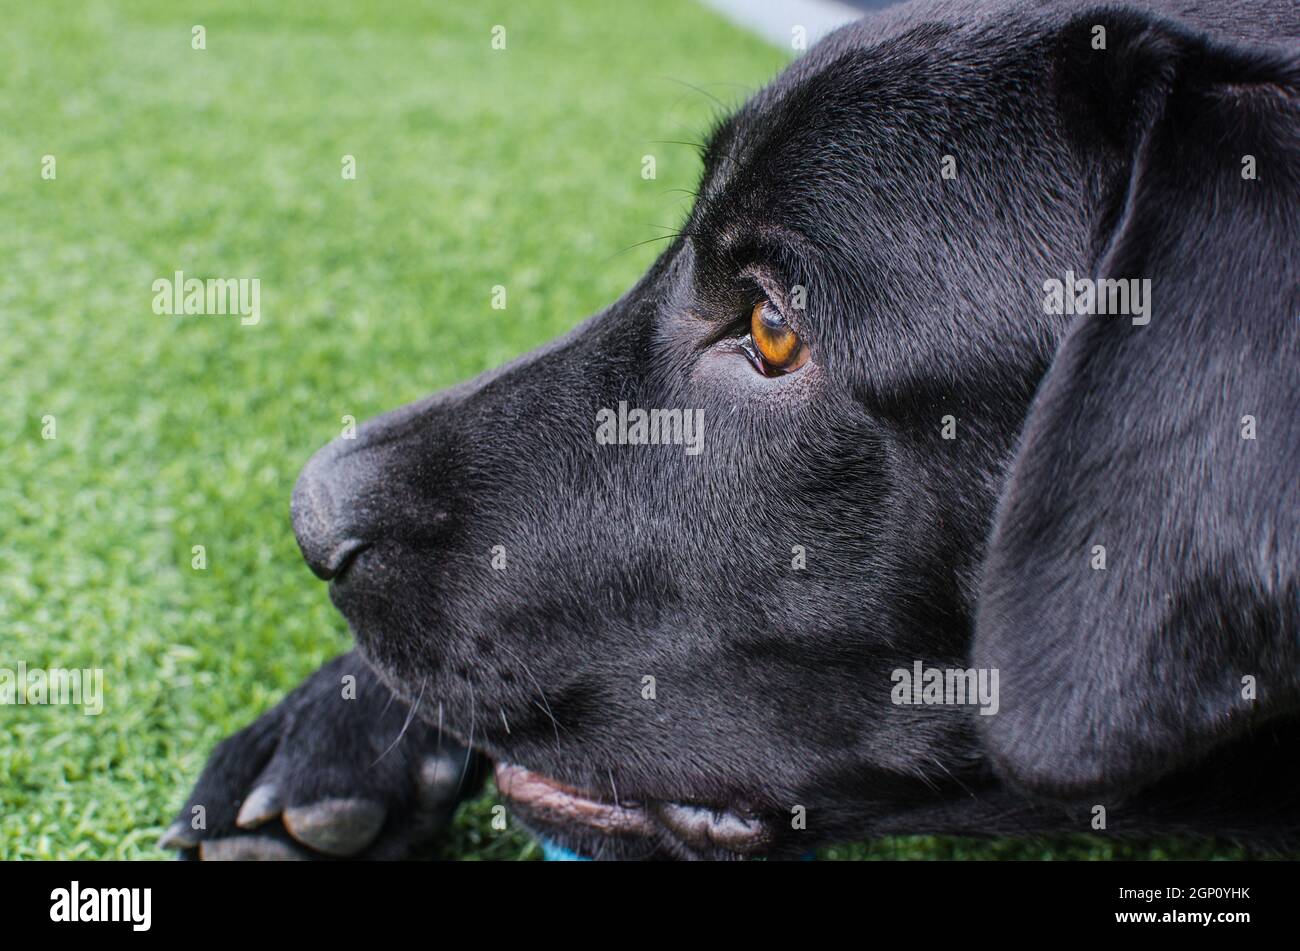 Black dog Labrador Retriever visage de près avec un look intense, neutre herbe arrière-plan jouant avec son jouet. Des nuances sombres et de beaux yeux Banque D'Images